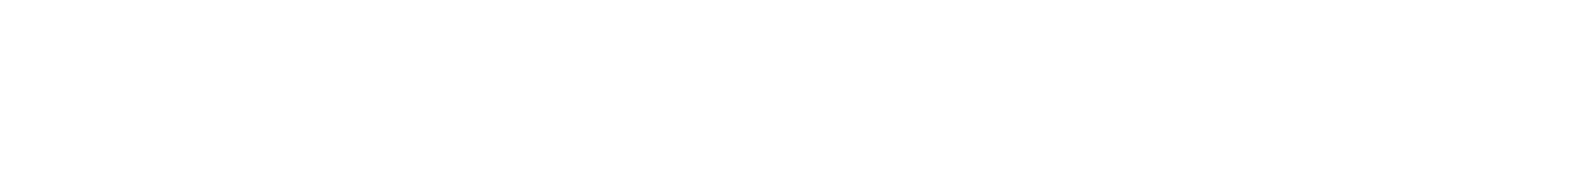 Sampo logo large for dark backgrounds (transparent PNG)